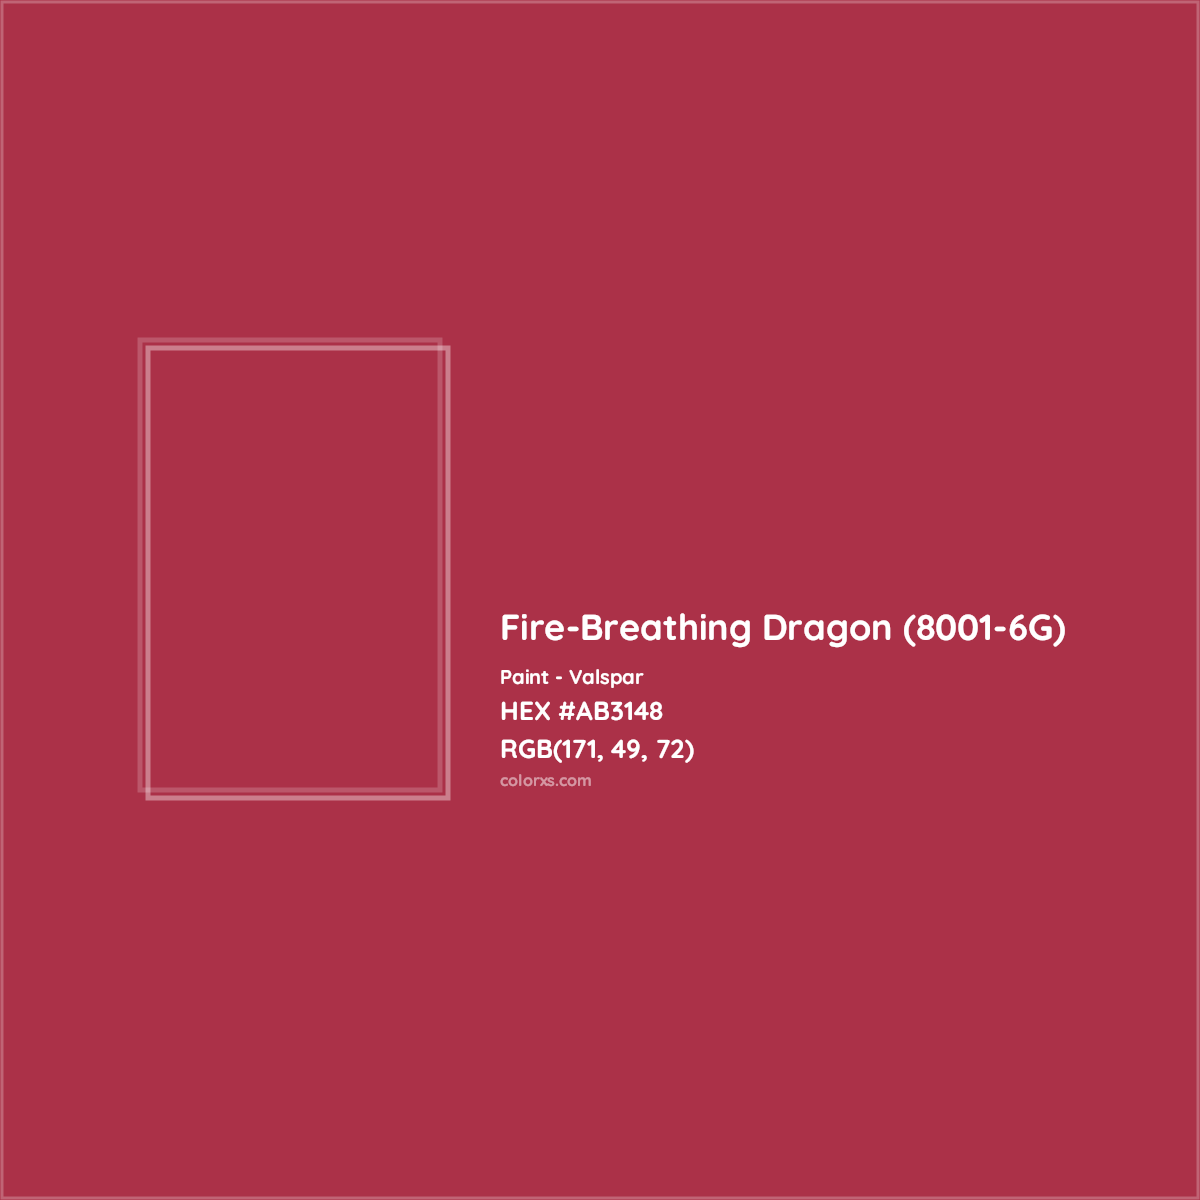 HEX #AB3148 Fire-Breathing Dragon (8001-6G) Paint Valspar - Color Code